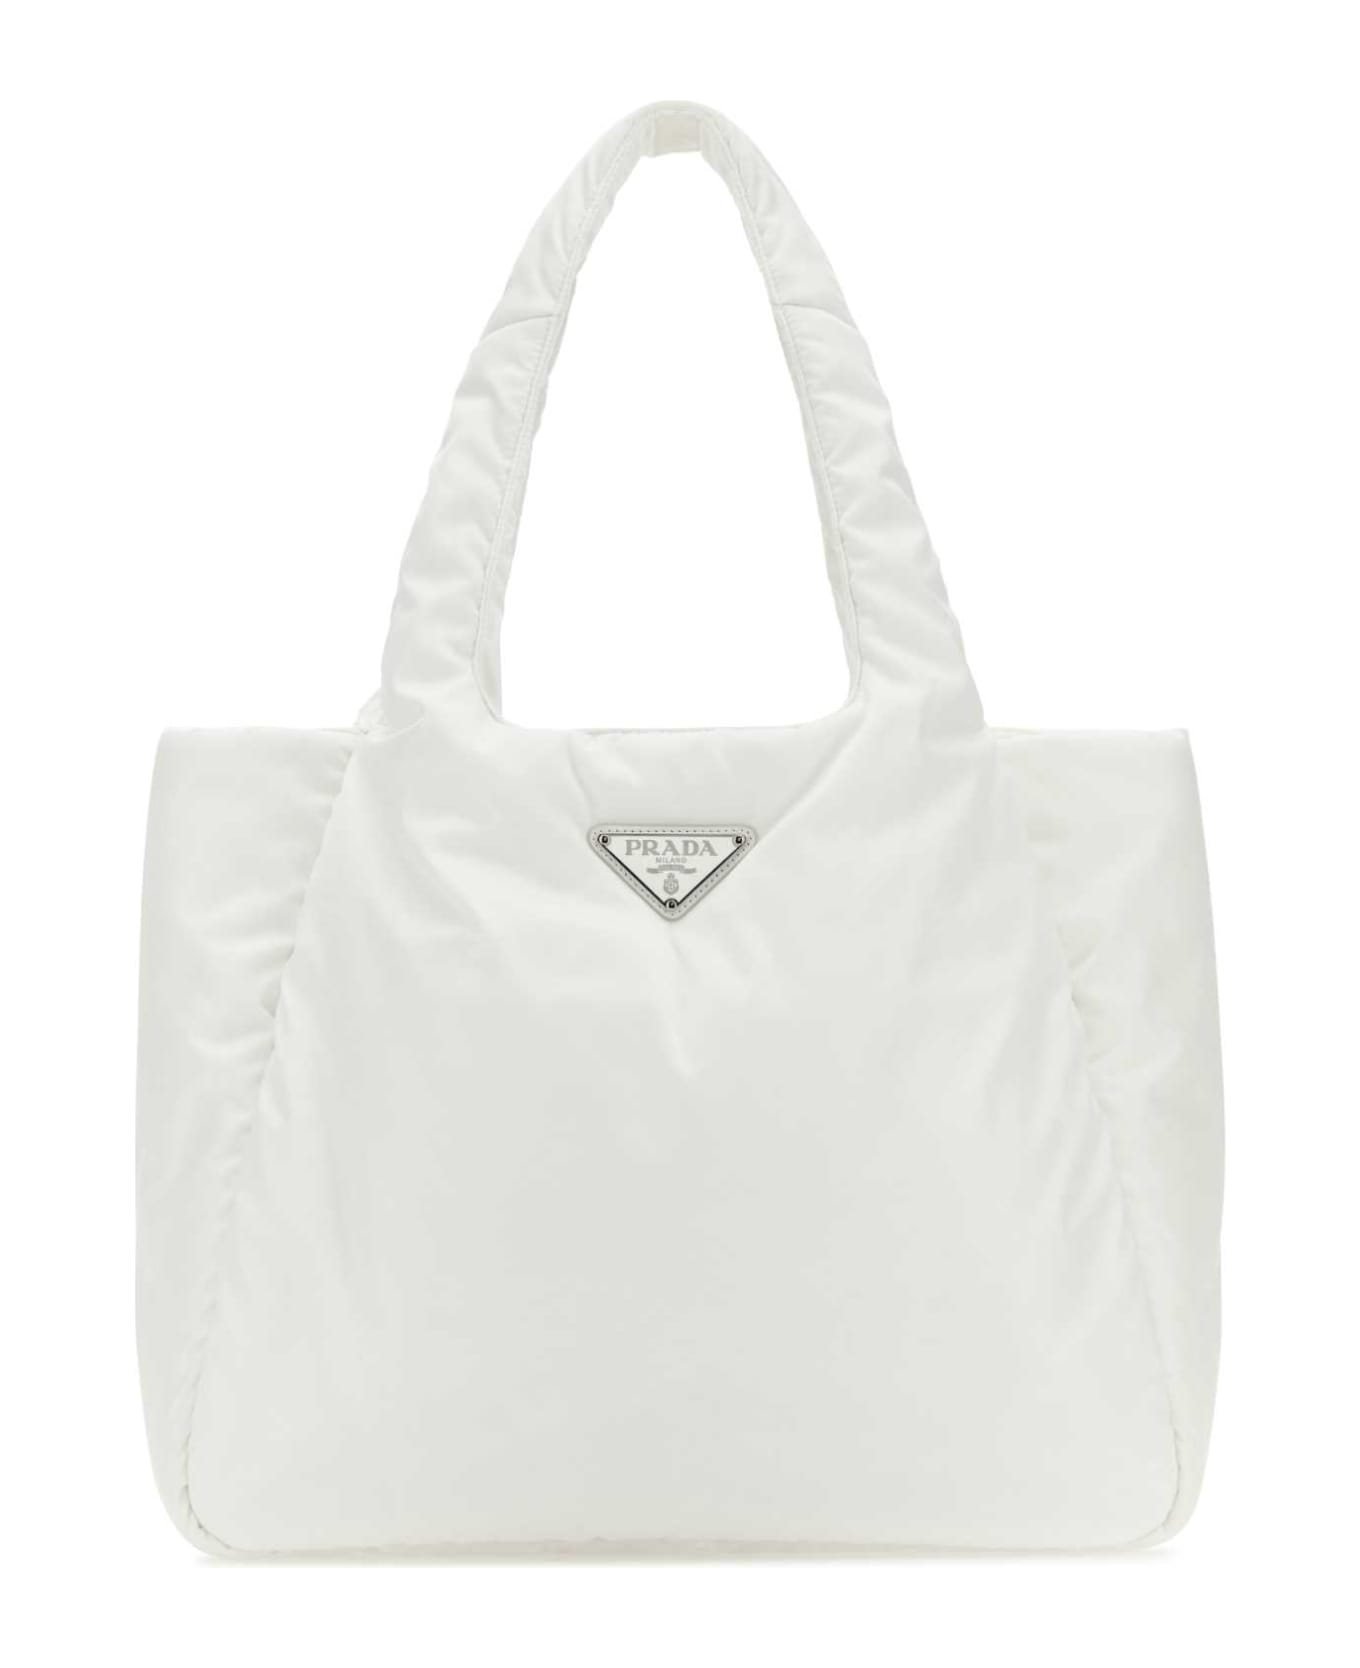 Prada White Re-nylon Handbag - BIANCO トートバッグ